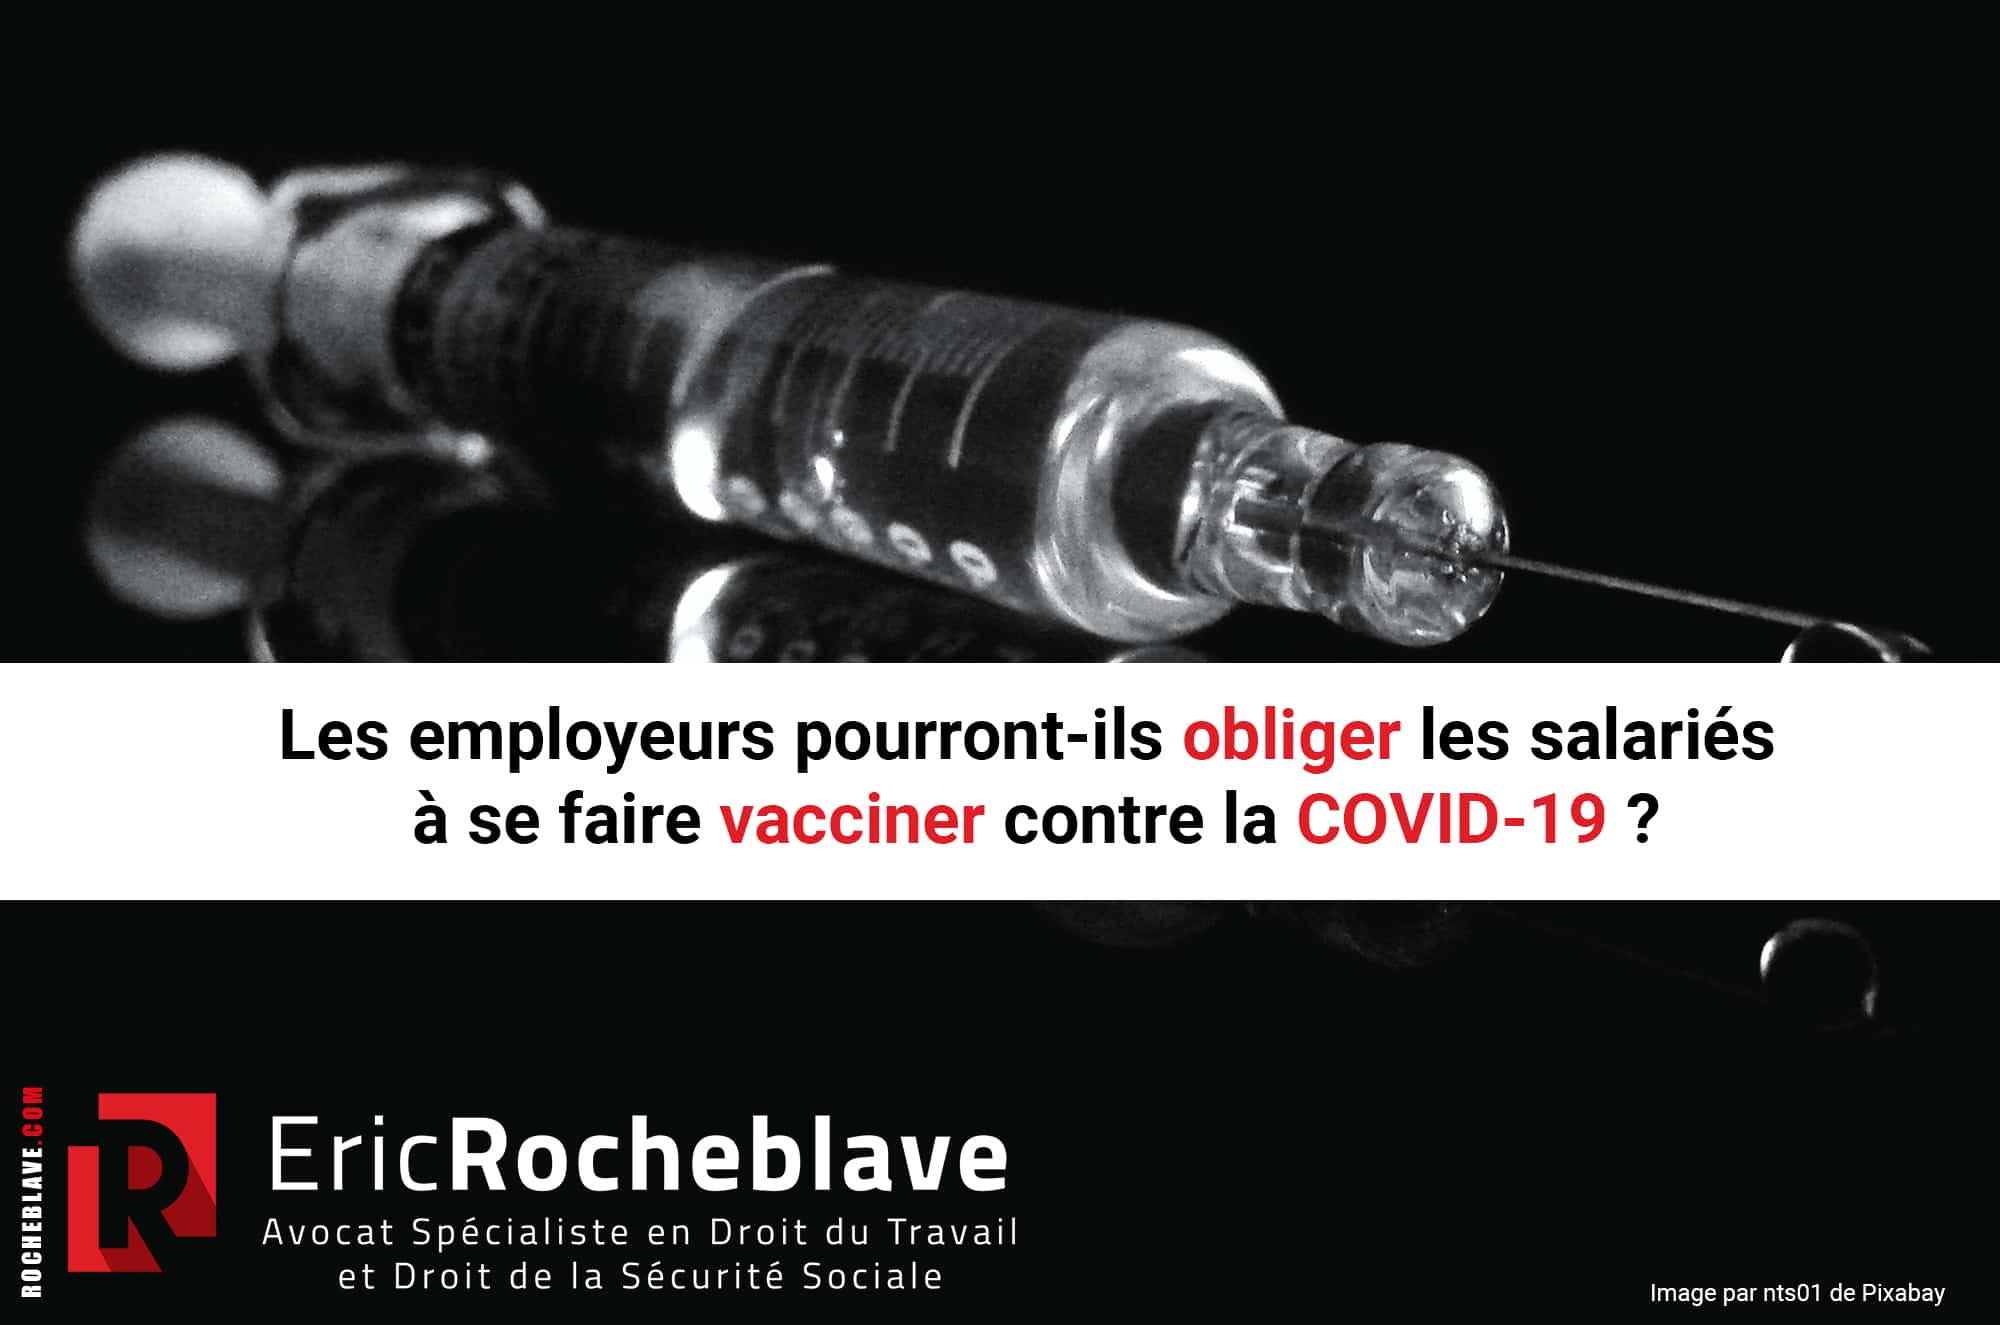 Les employeurs pourront-ils obliger les salariés à se faire vacciner contre la COVID-19 ?